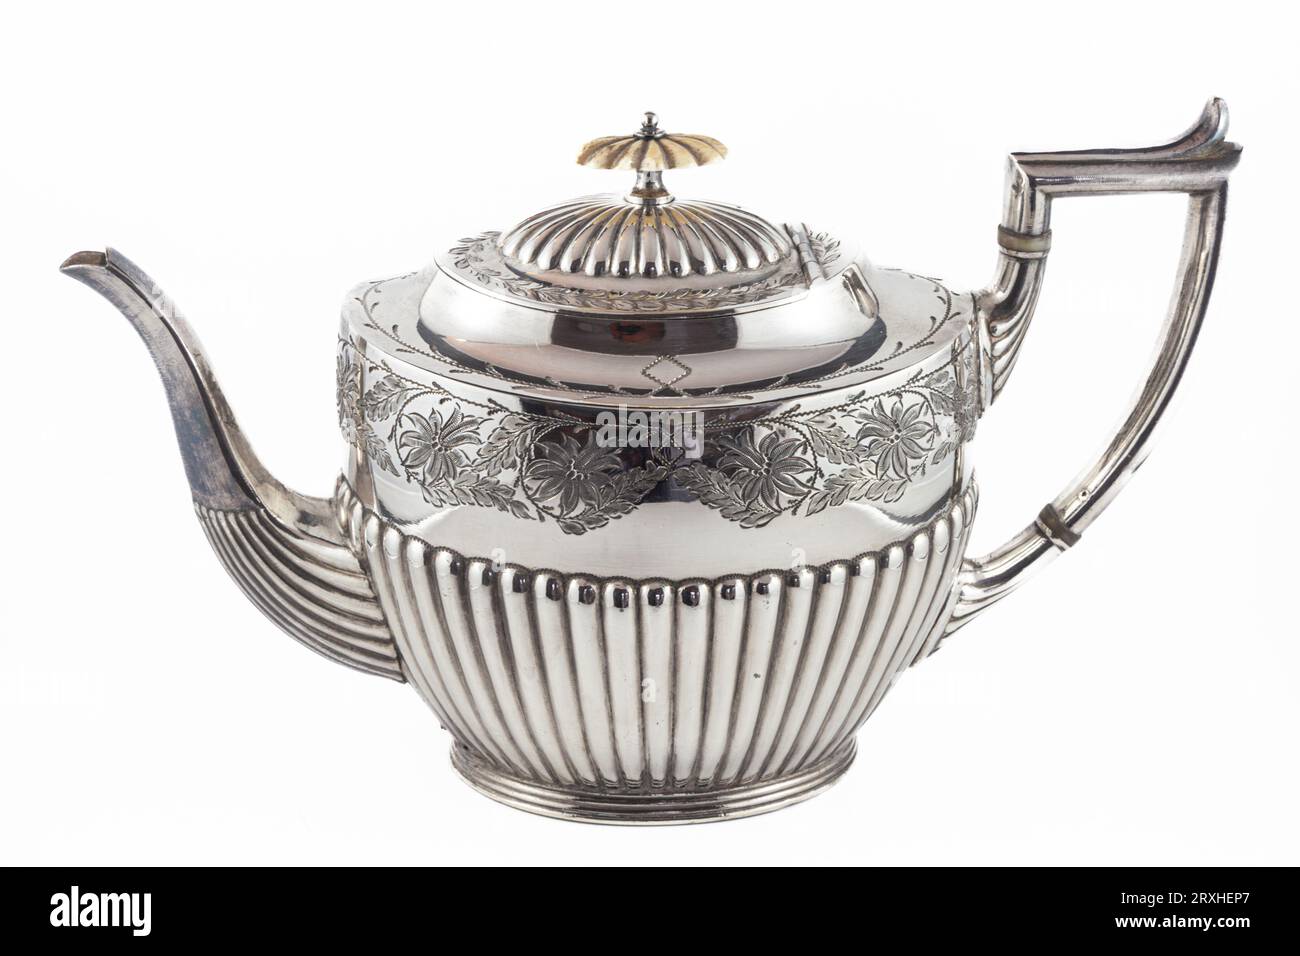 Antique decorative British Tea Pot circa 1870 Stock Photo